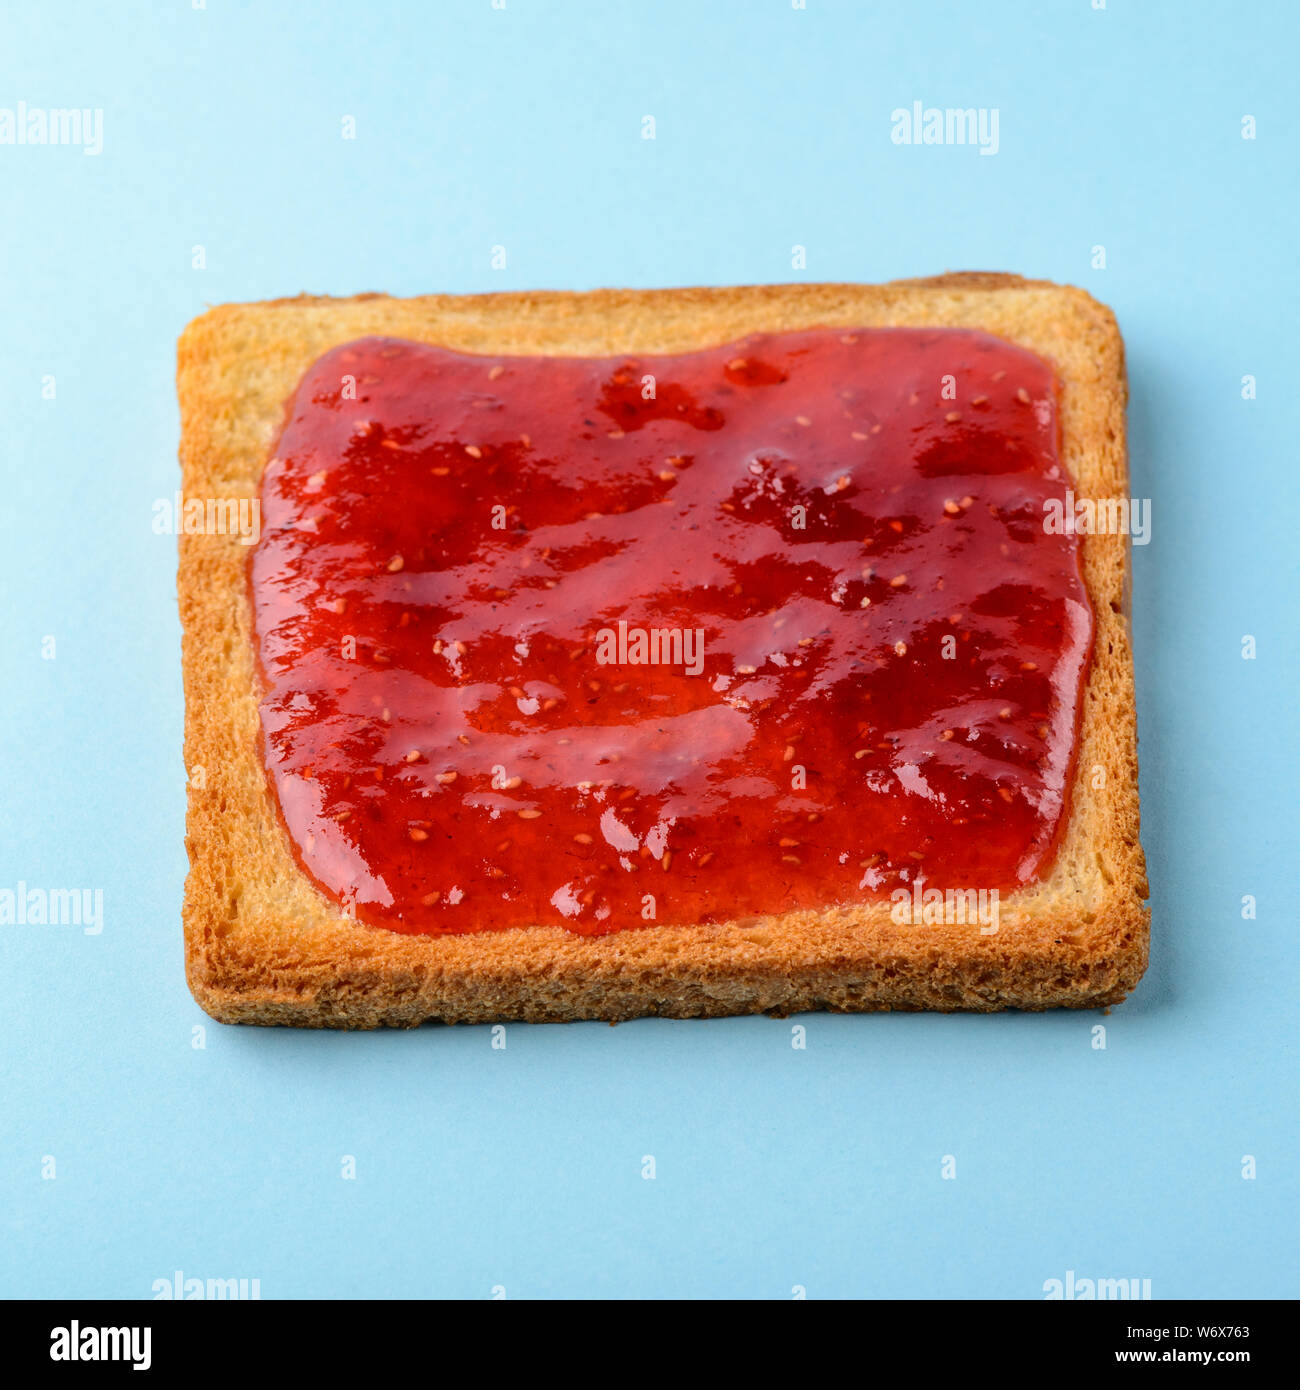 Toast with raspberry jam Stock Photo